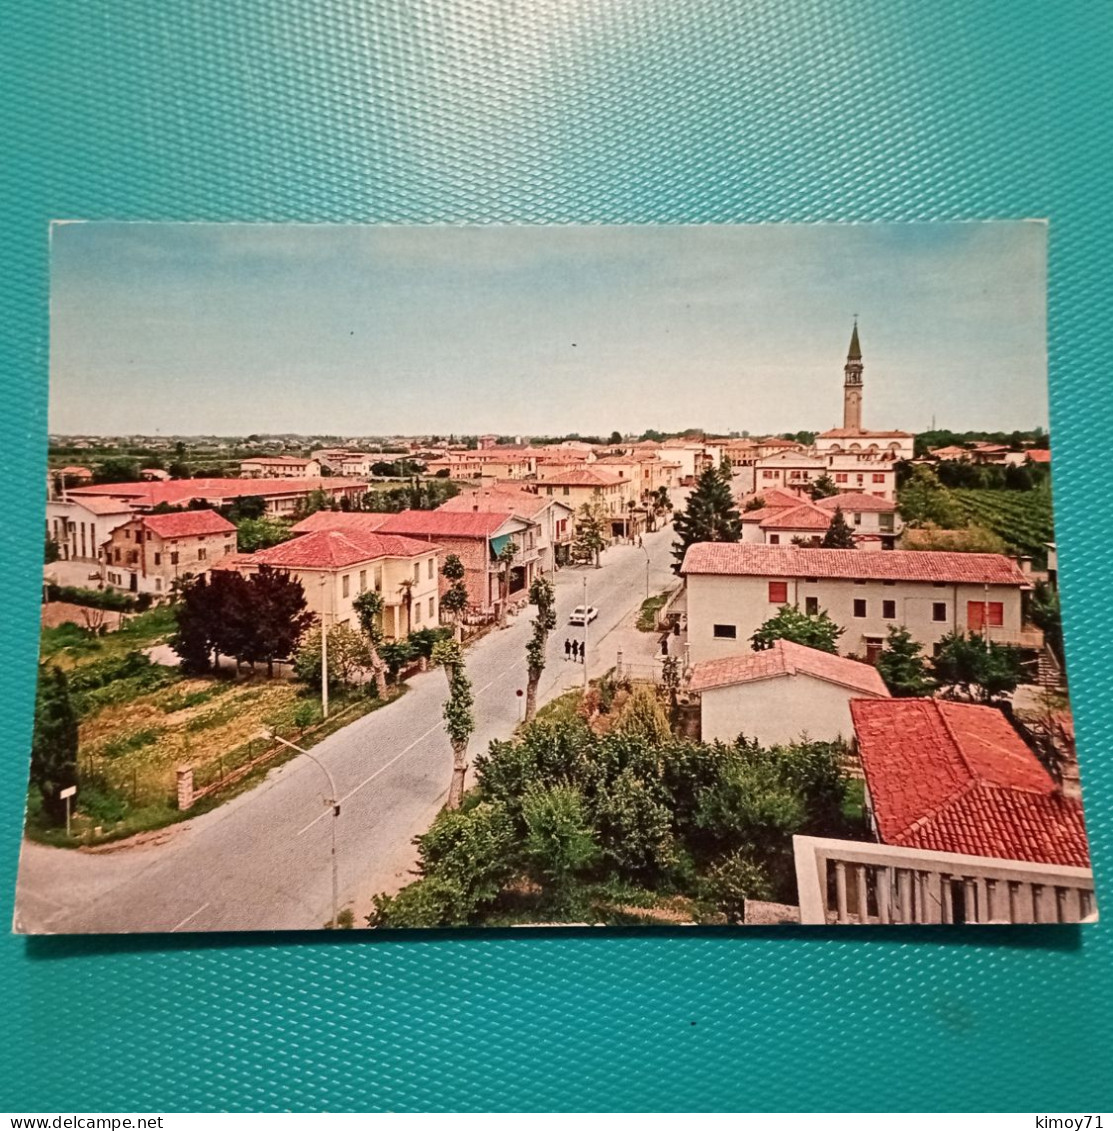 Cartolina Fossalta Di Pieve - Panorama. Non Viaggiata - Venezia (Venice)